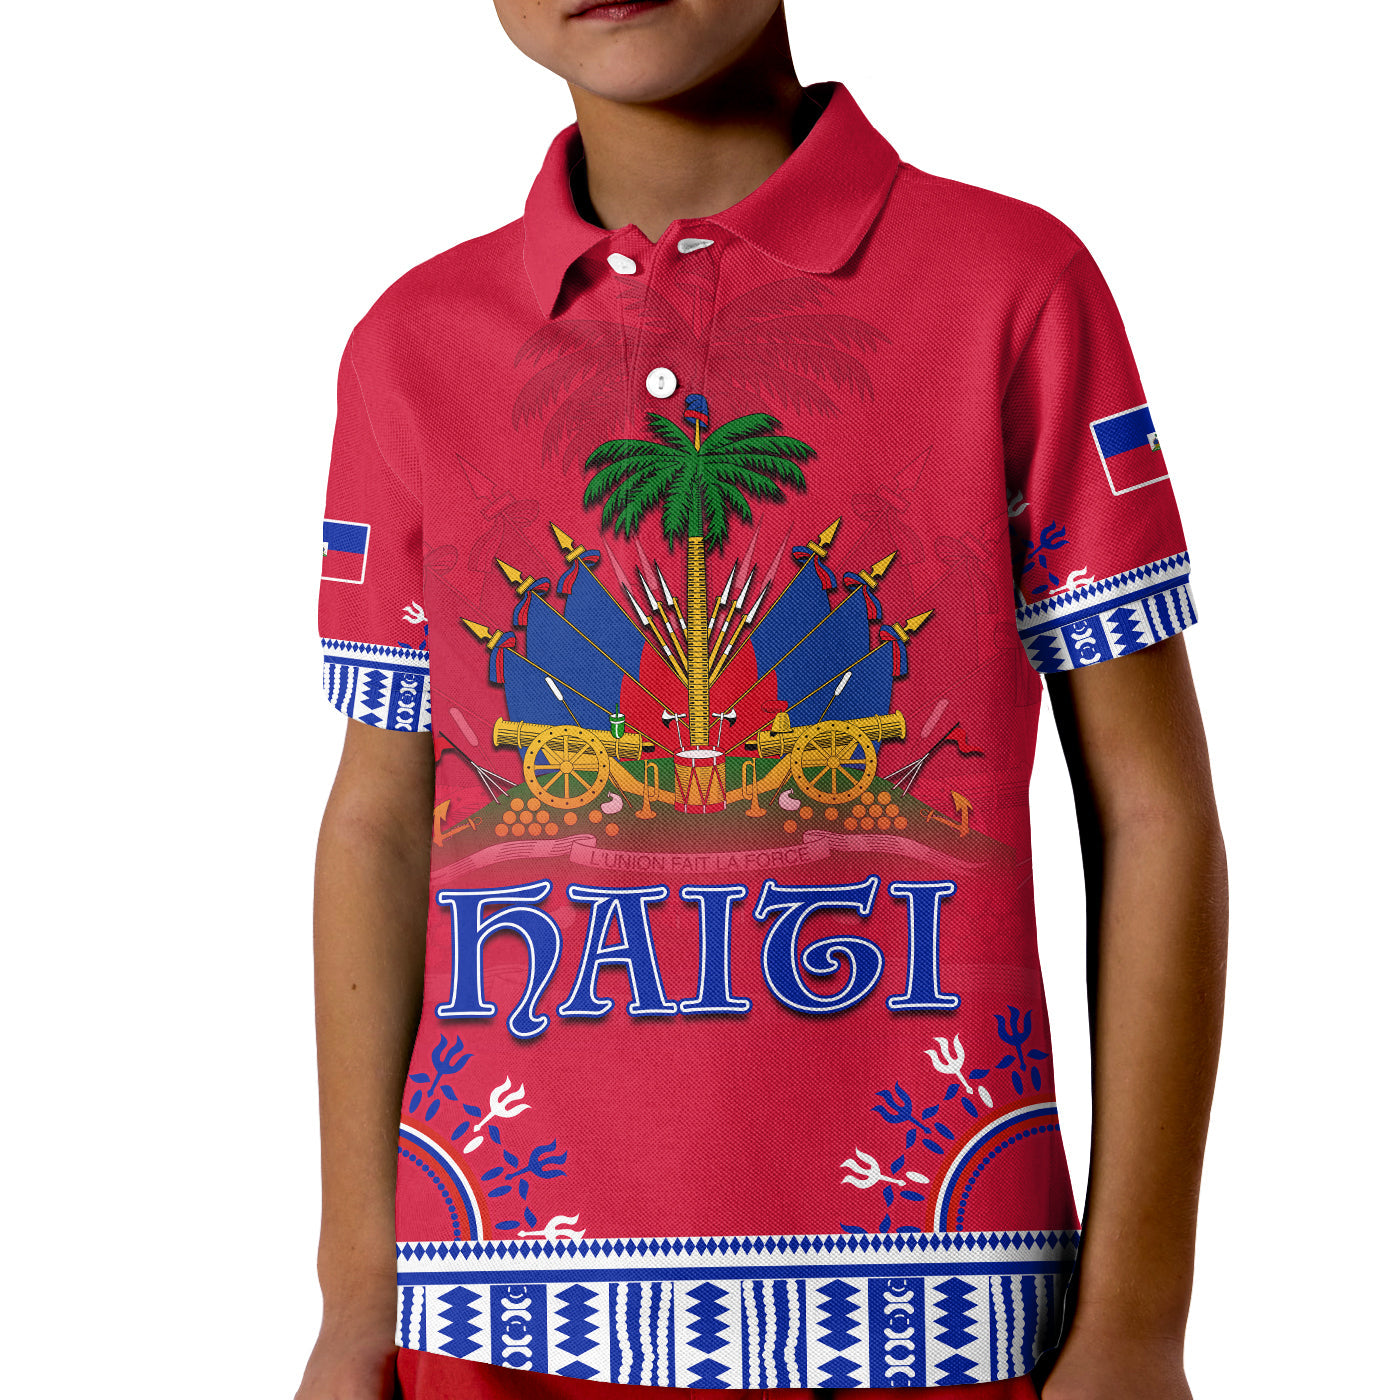 haiti-polo-shirt-kid-dashiki-style-gorgeous